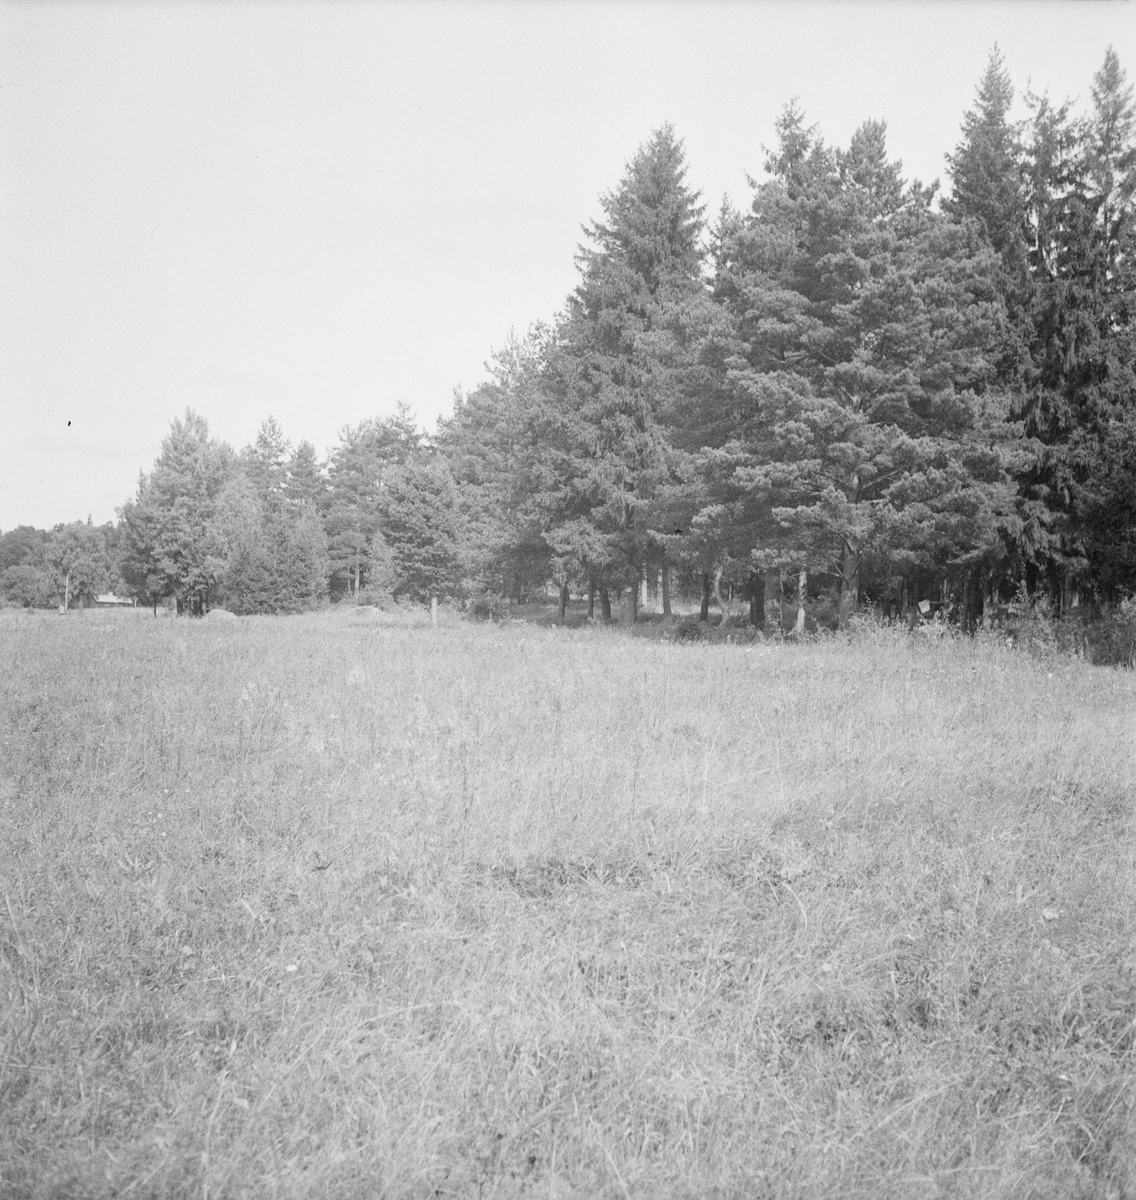 Olycka vid Rosenlund, Uppland 1947